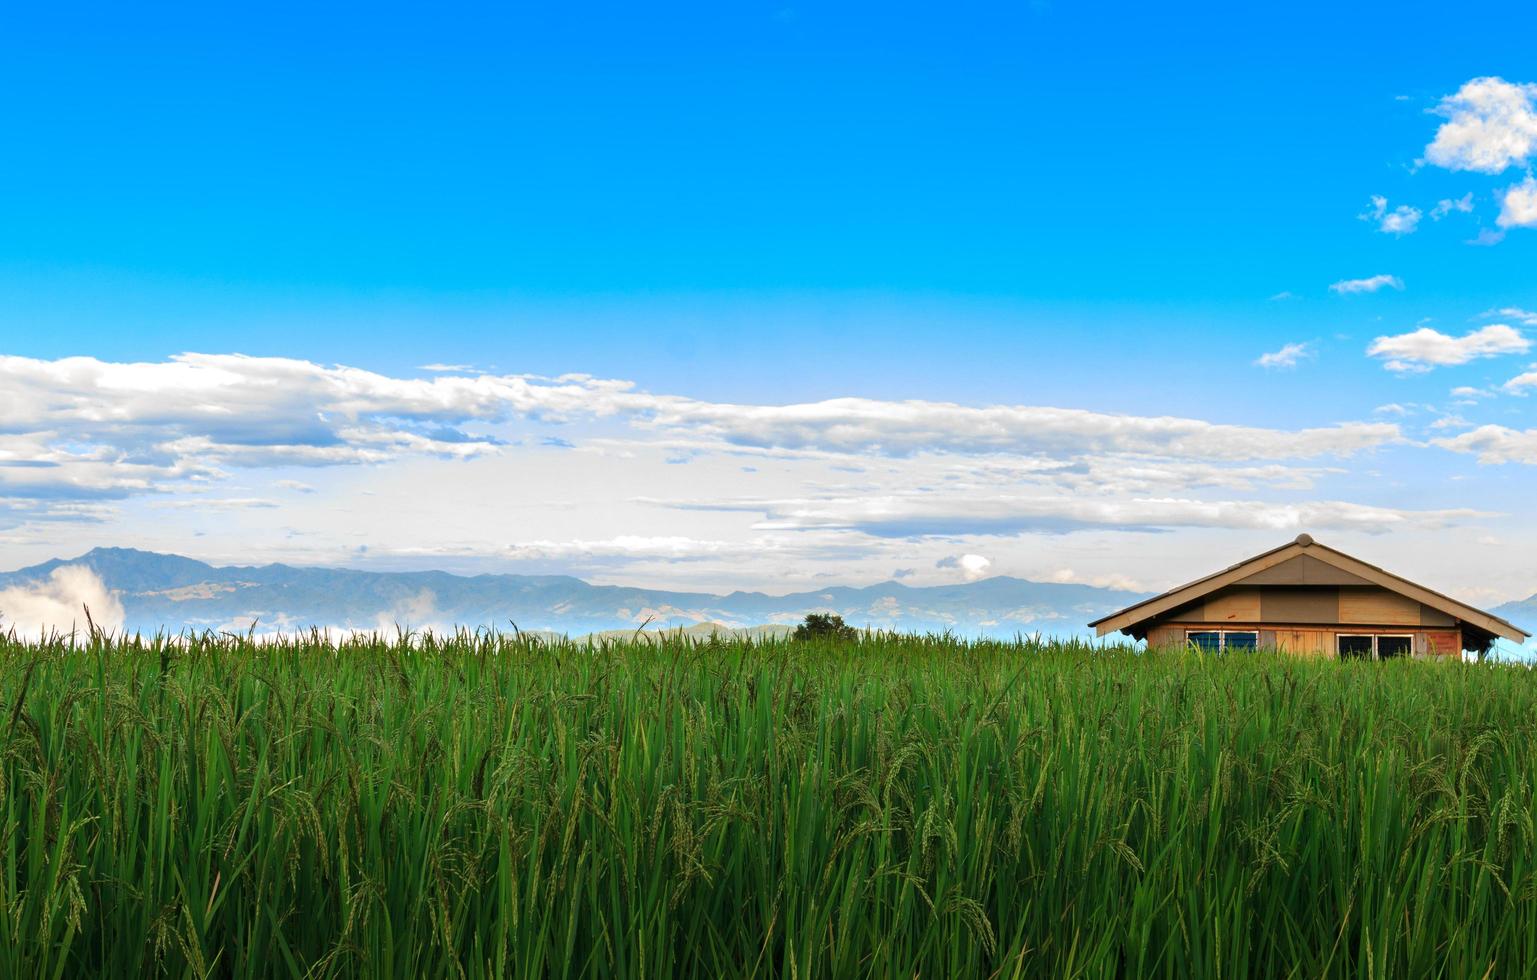 pequeñas casas, campos de arroz y hermosa naturaleza en el valle. imagen de fondo de serenidad foto